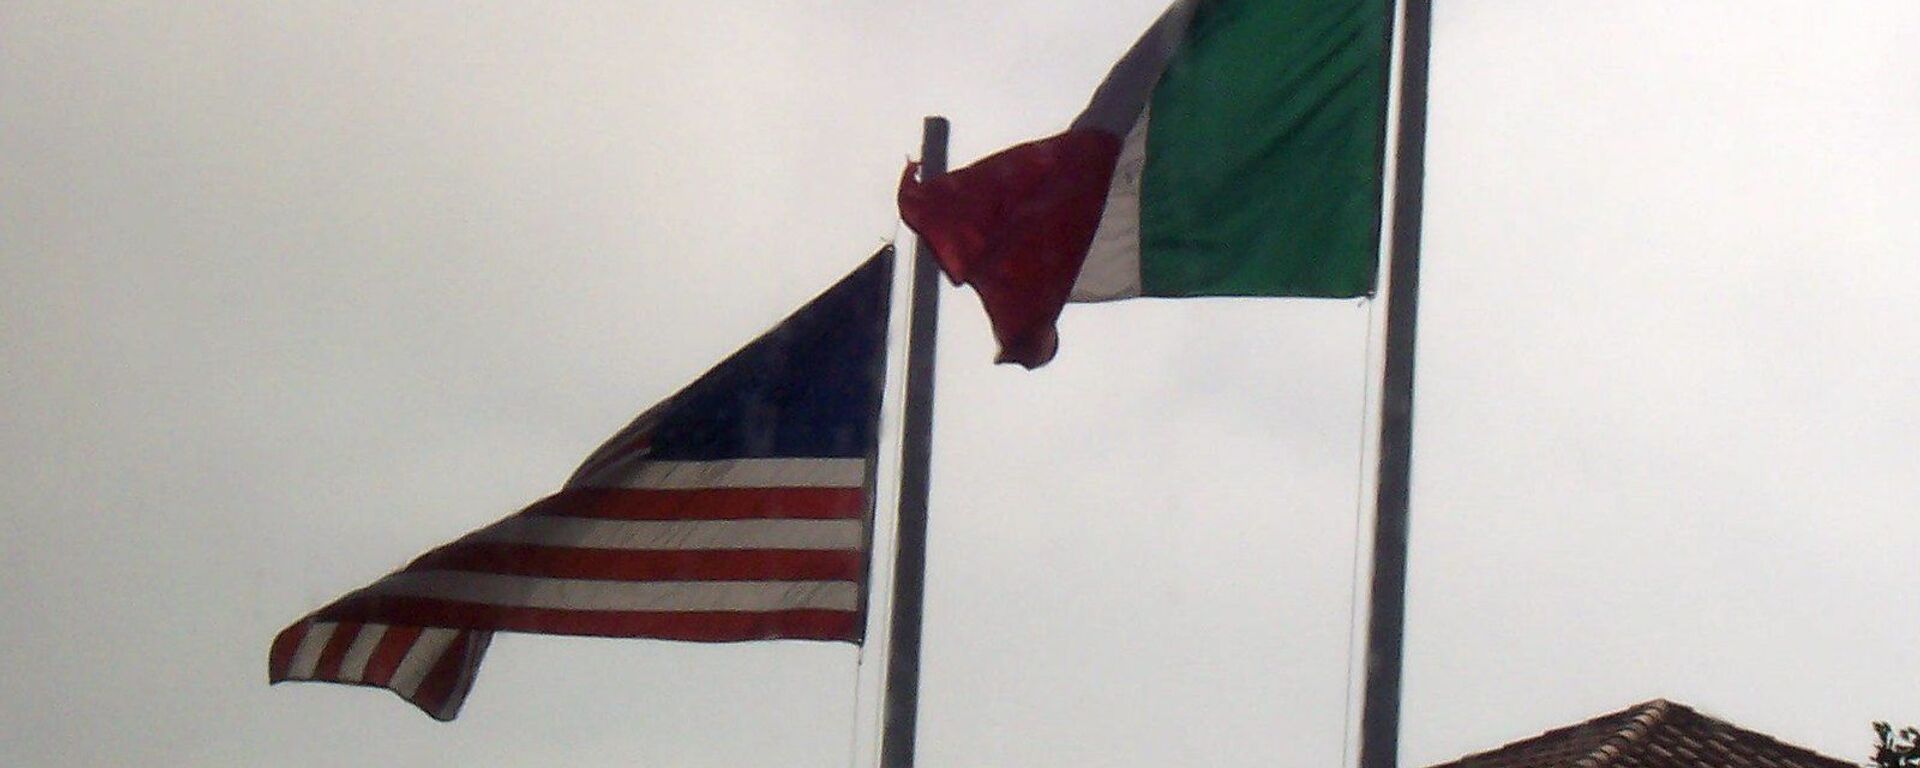 Banderas de EEUU y México - Sputnik Mundo, 1920, 09.09.2021